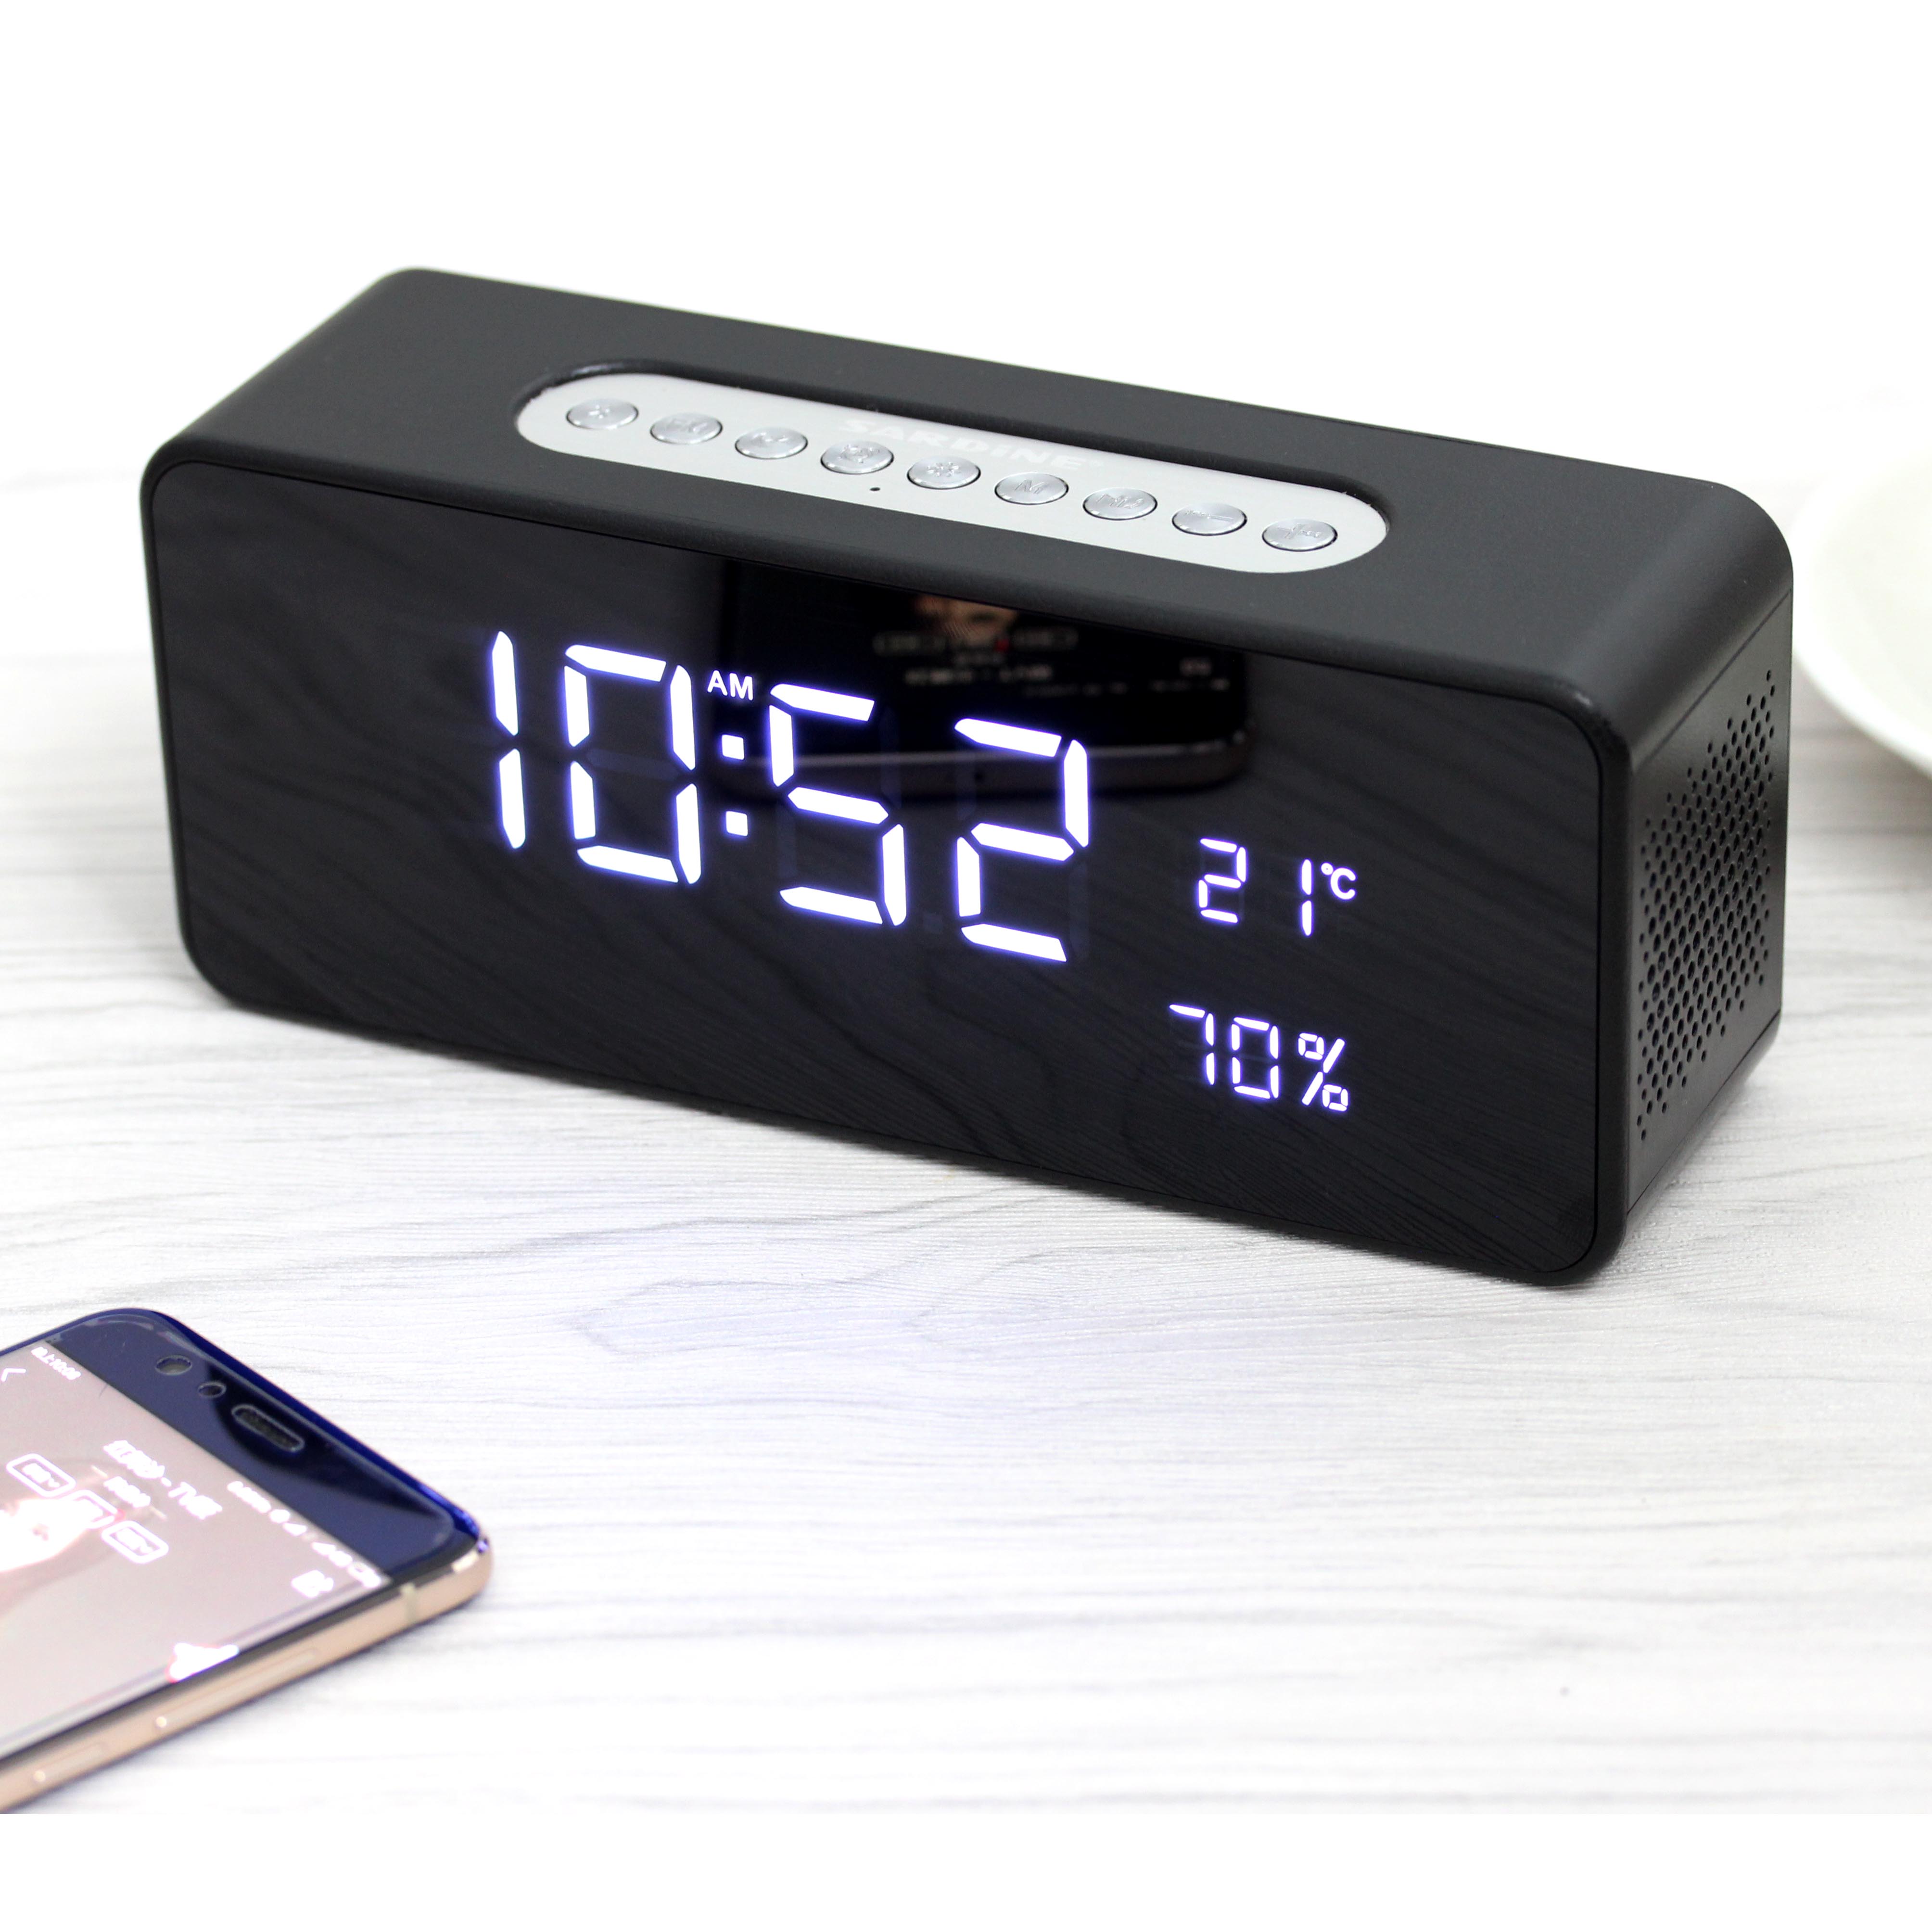 S1 Bluetooth Speaker with alarm clock and temperature